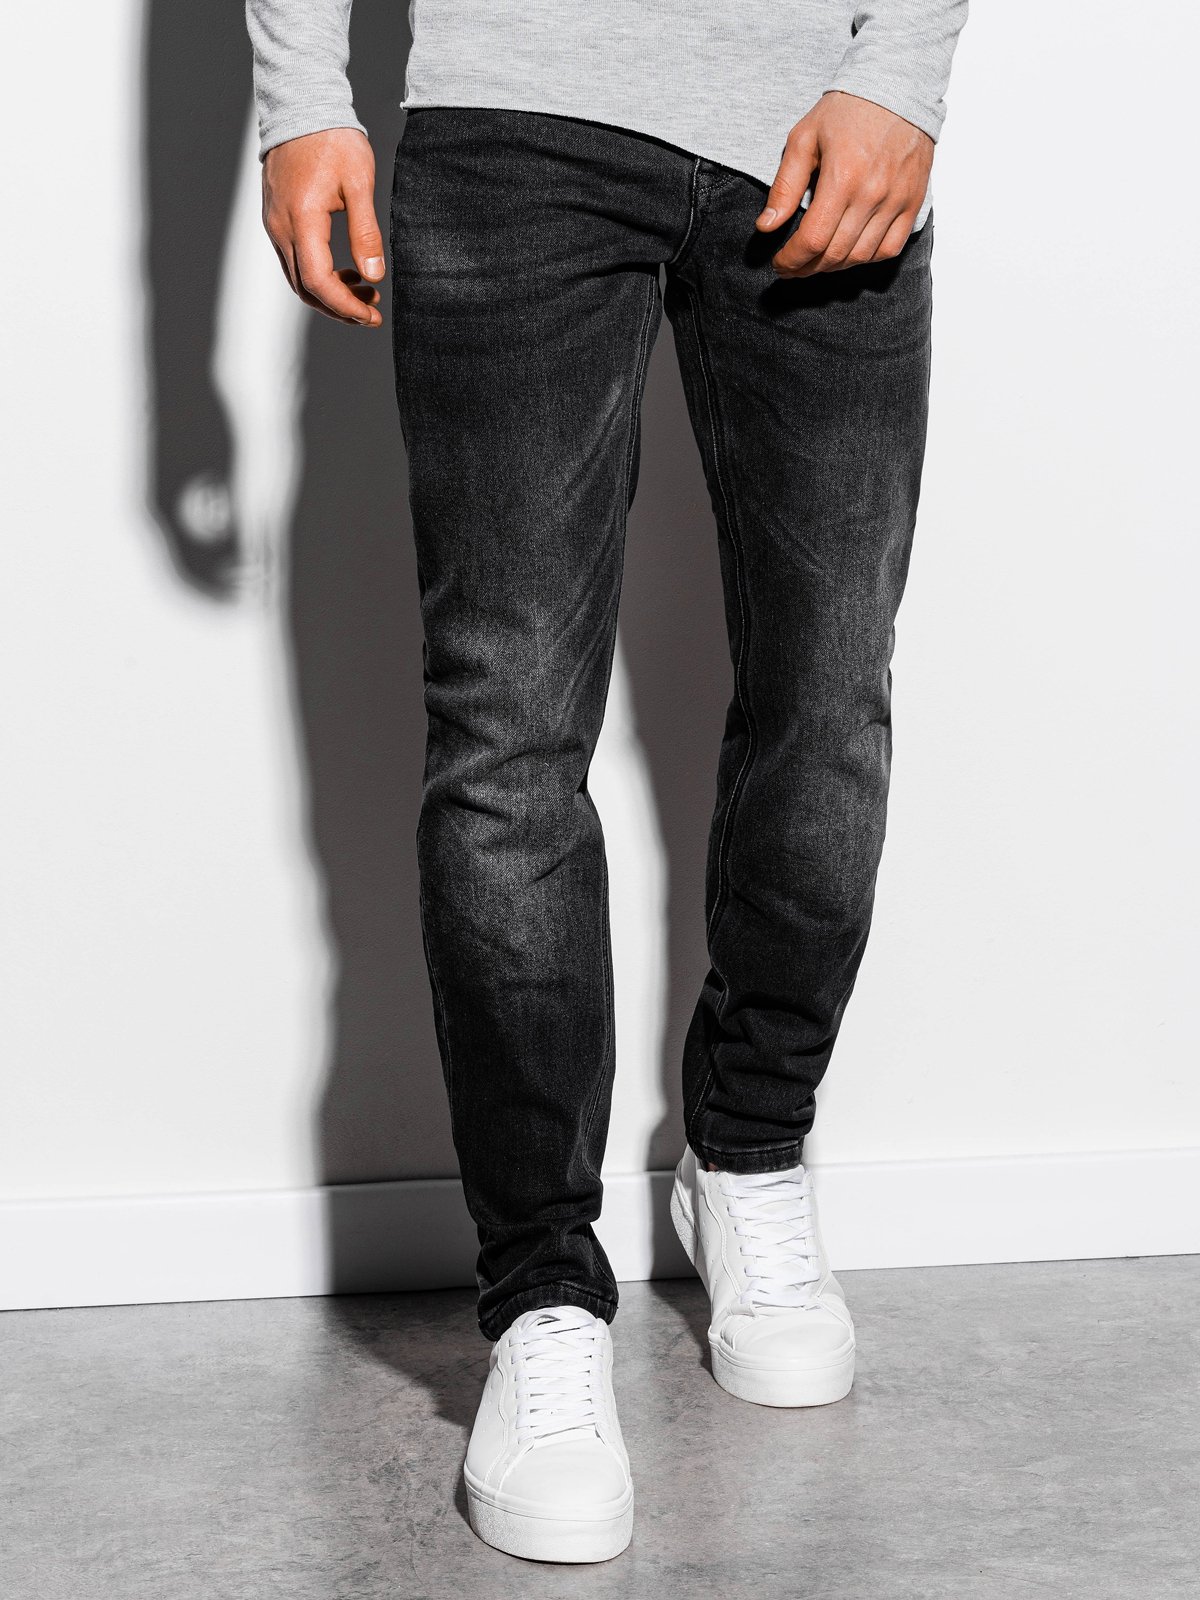 كاف إسحب للخارج خسارة  Men's jeans P864 - black | MODONE wholesale - Clothing For Men